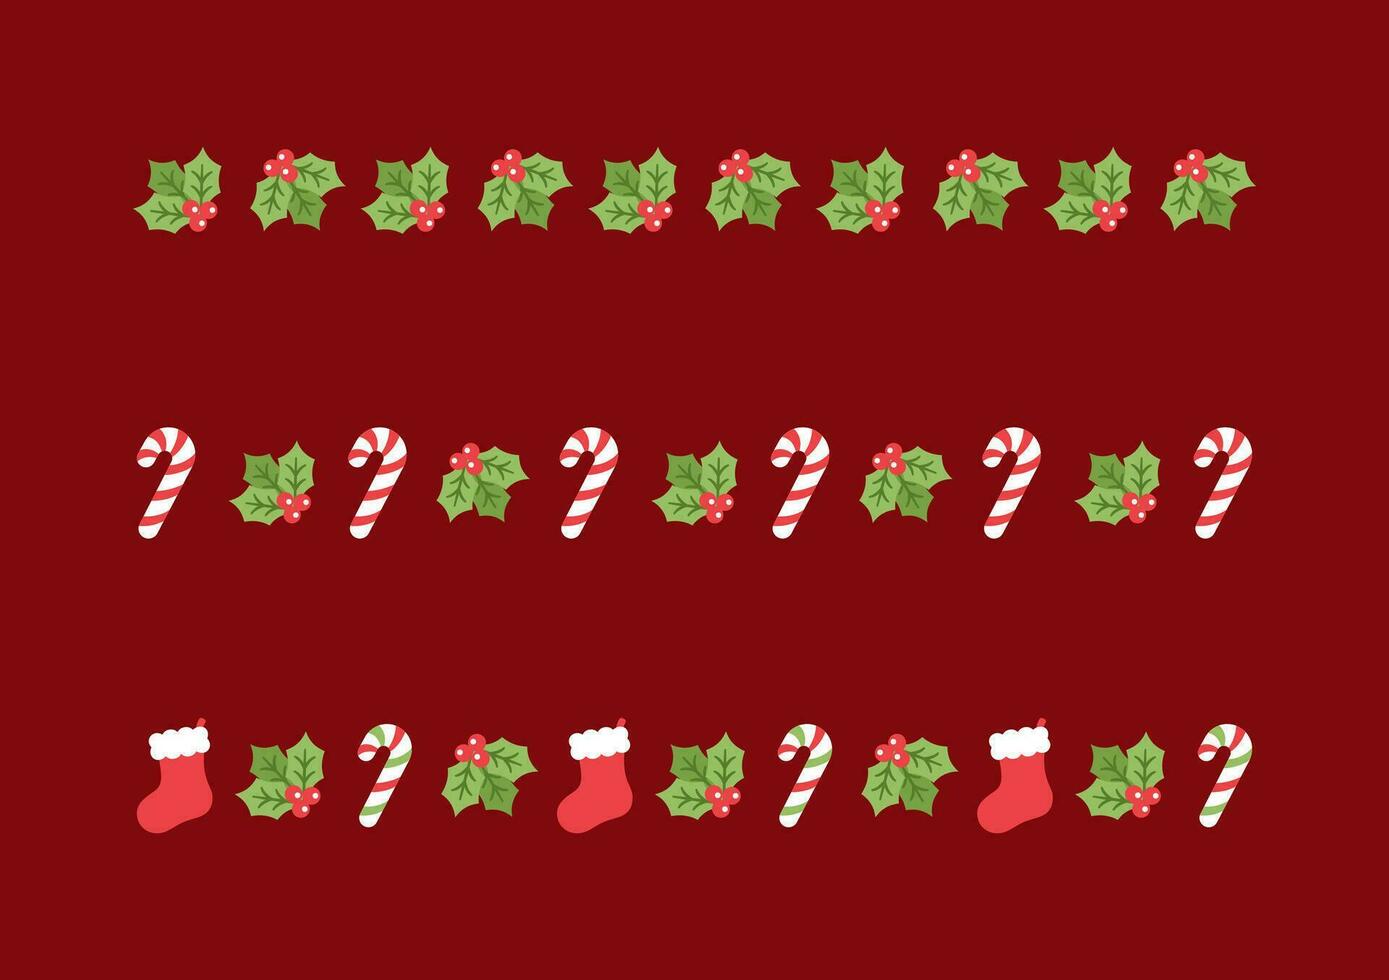 Navidad temática decorativo frontera y texto divisor colocar, Navidad media, caramelo caña y muérdago modelo. vector ilustración.